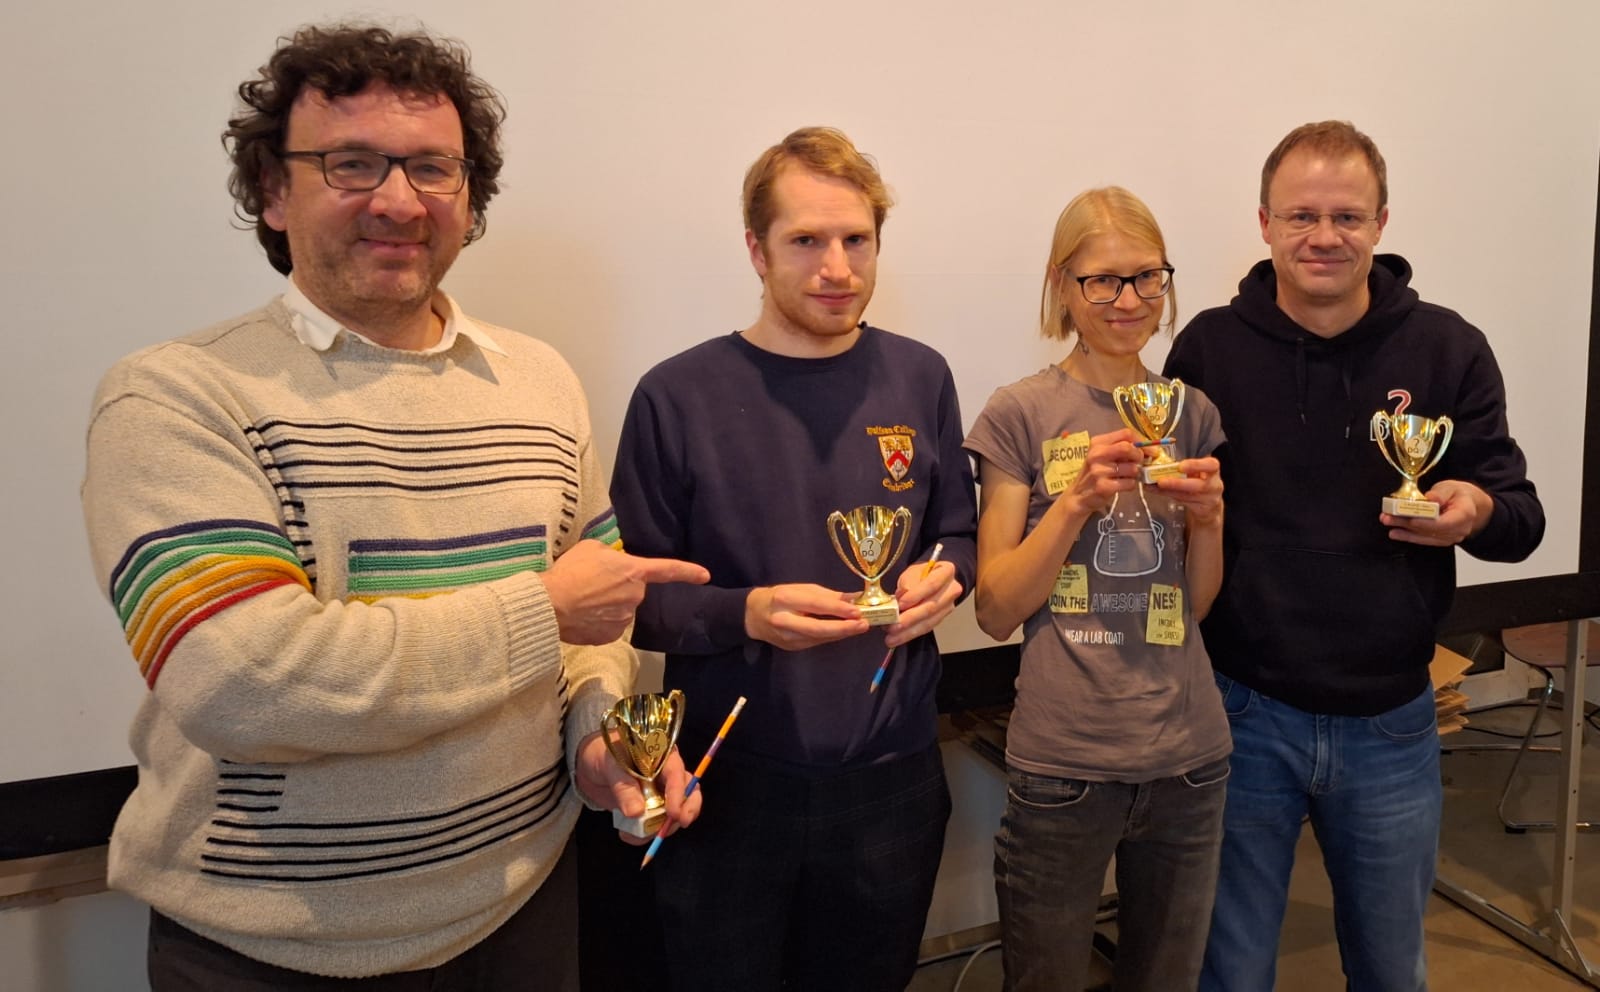 MQM 2023, Teamwettbewerb, 1. Platz: Fragenkombinat Schwarze Pumpe mit Thomas Bonnecroy, Alexander Kloß, Suse Kley und Stefan Friedrich (v.l.n.r.)